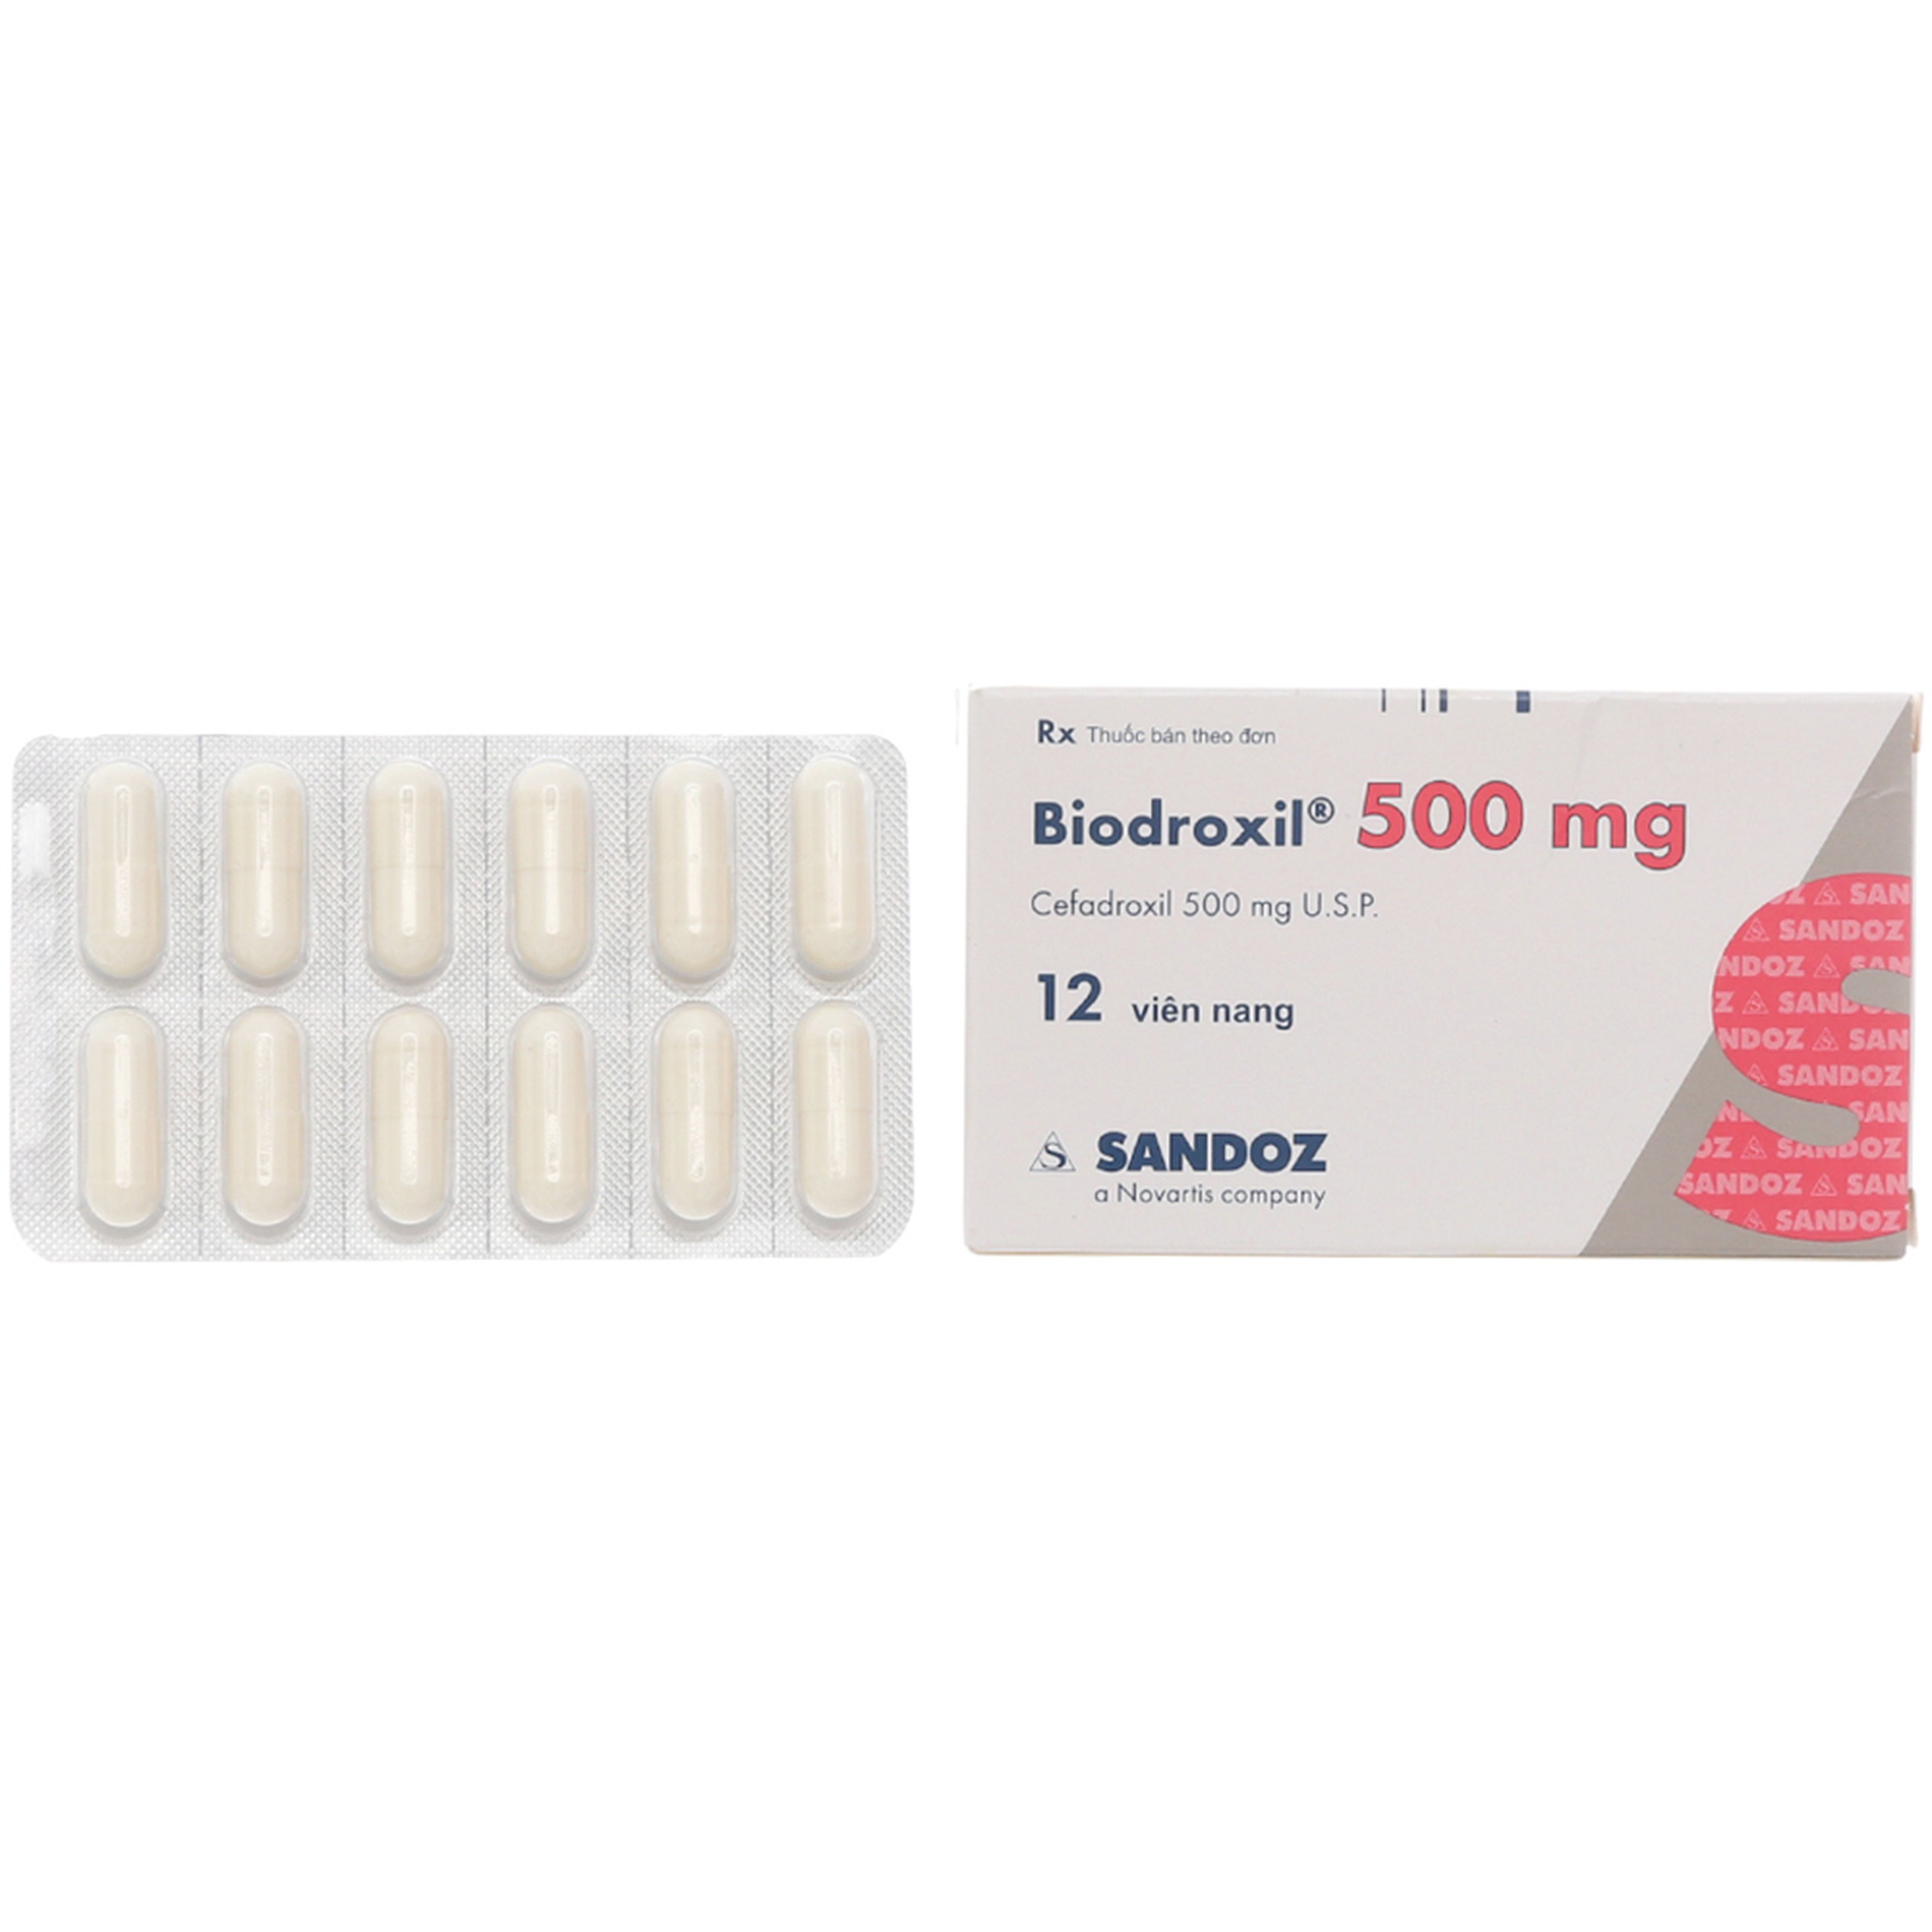 Thuốc Biodroxil 500mg Sandoz điều trị viêm họng, viêm amidan, viêm phế quản (1 vỉ x 12 viên)